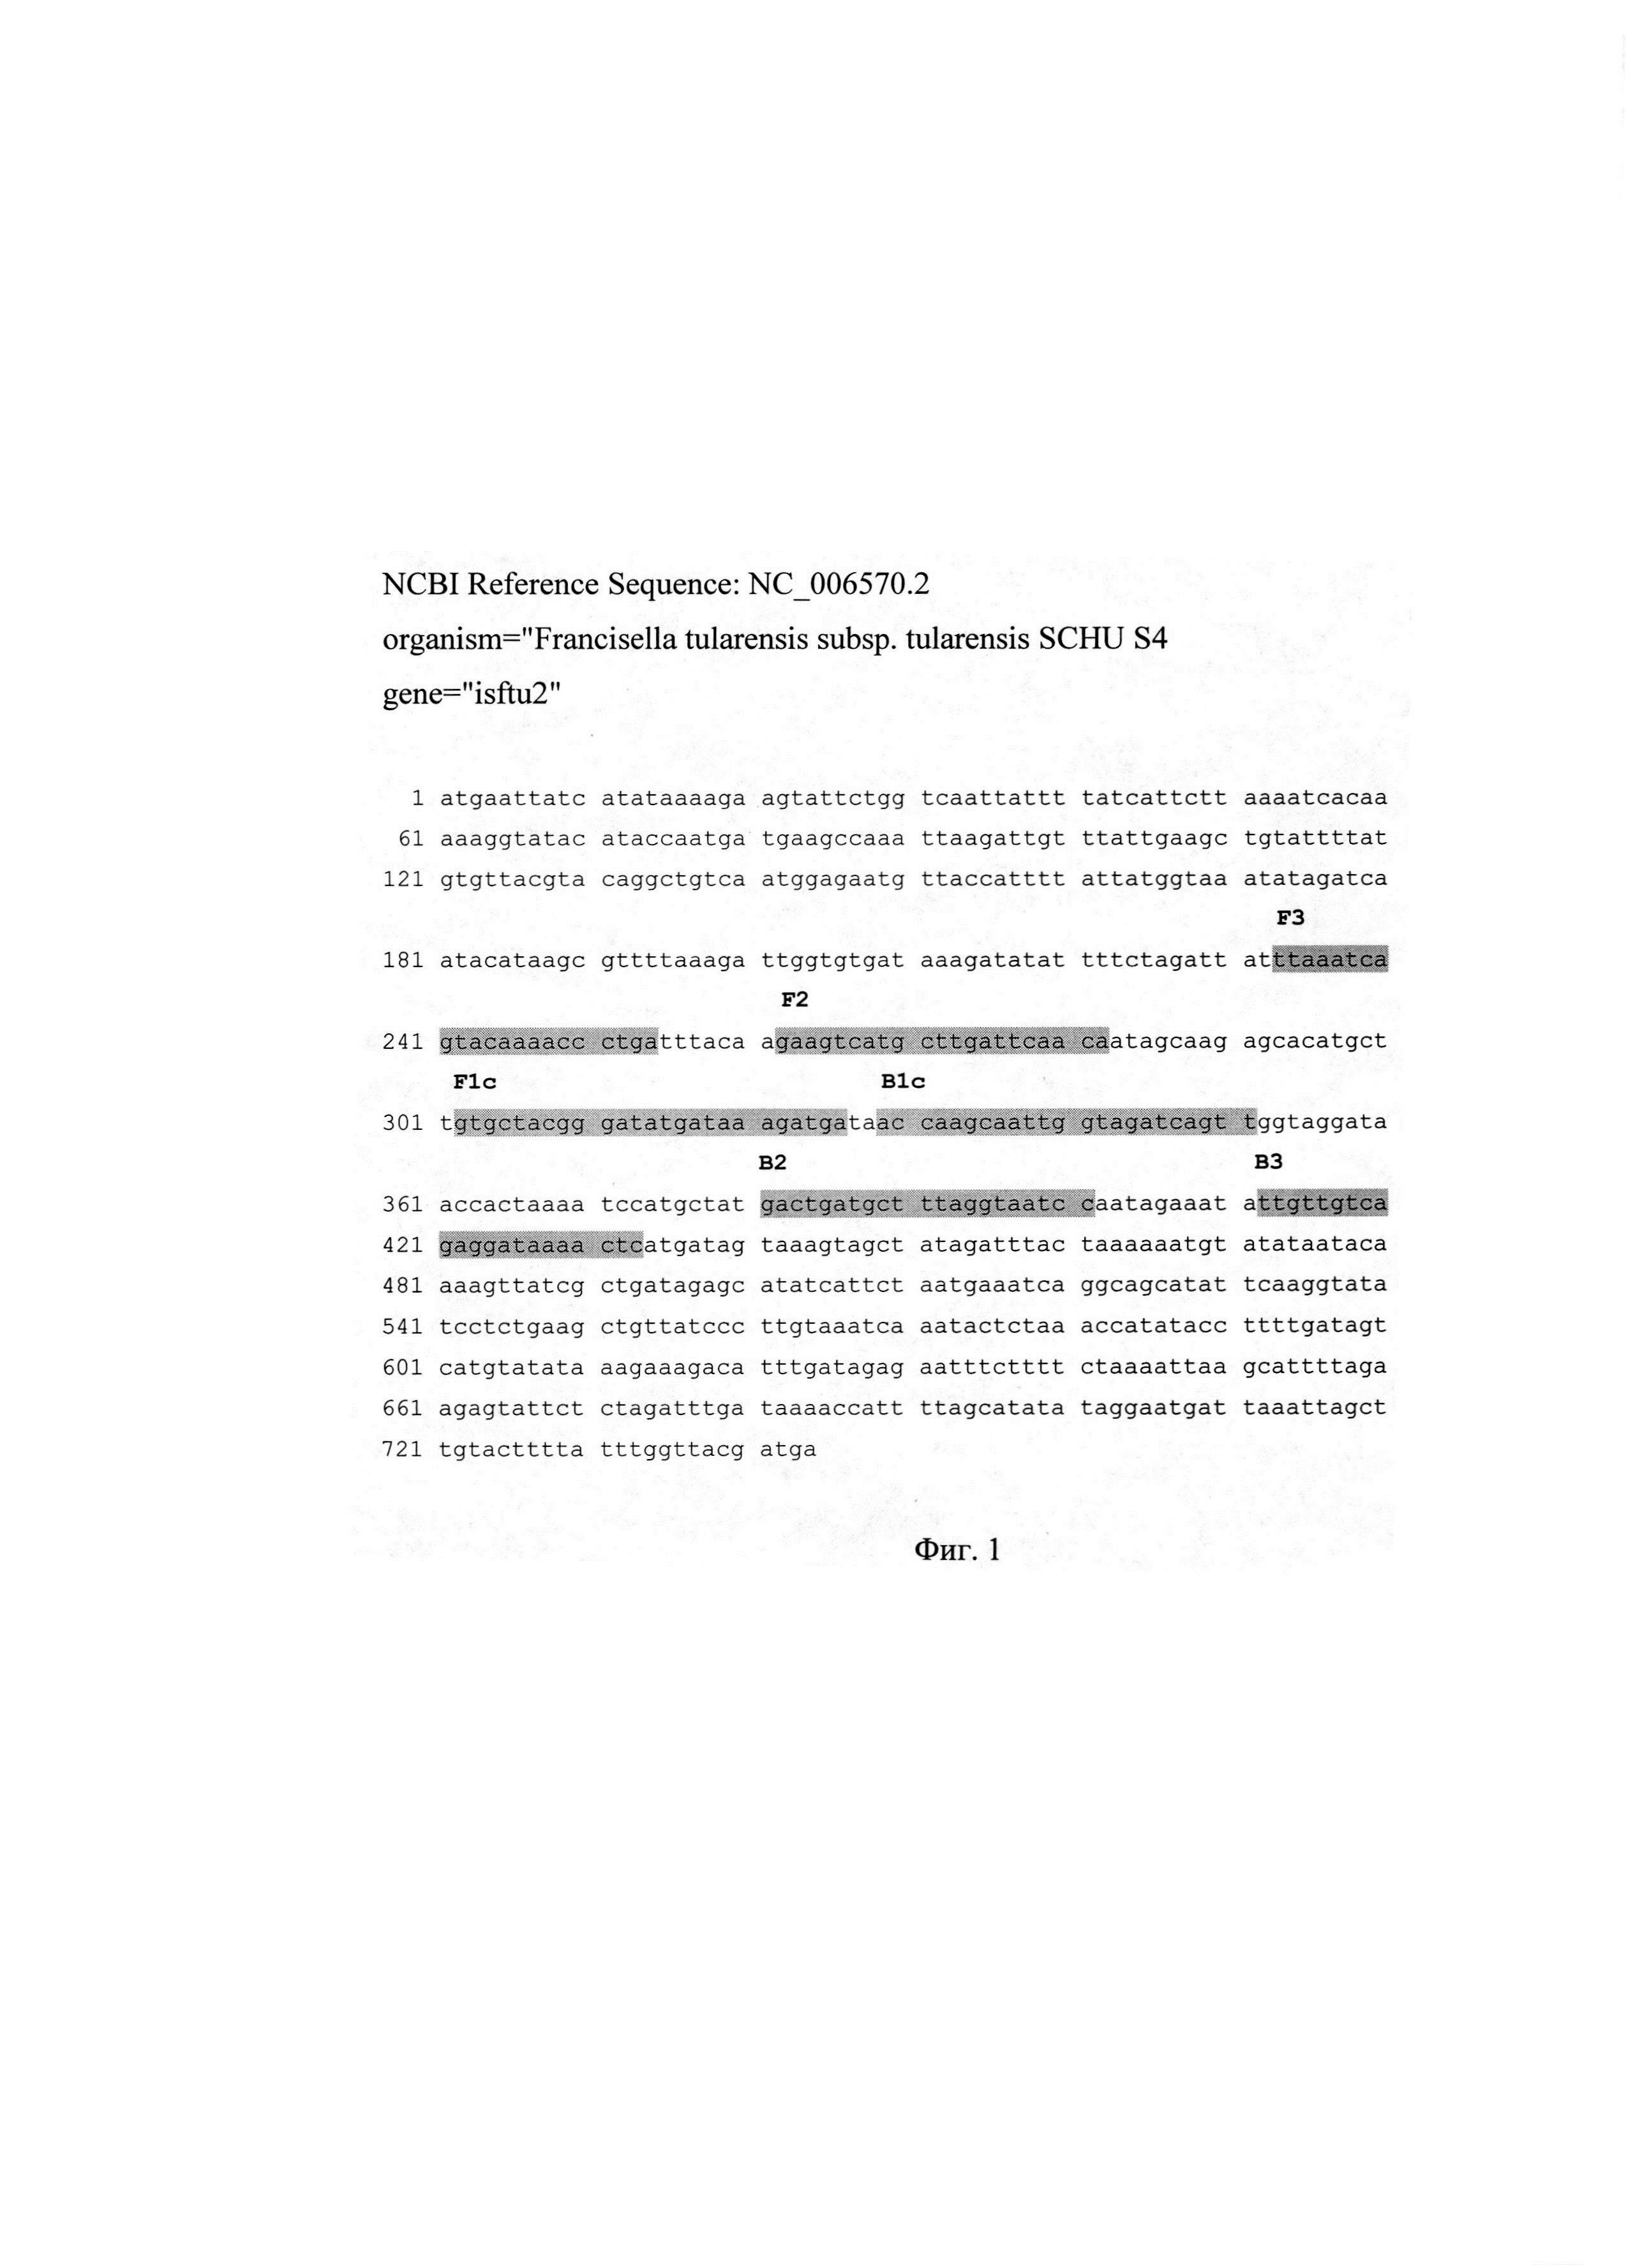 Набор олигонуклеотидных праймеров Ft 40 и способ определения бактерий Francisella tularensis (Варианты)